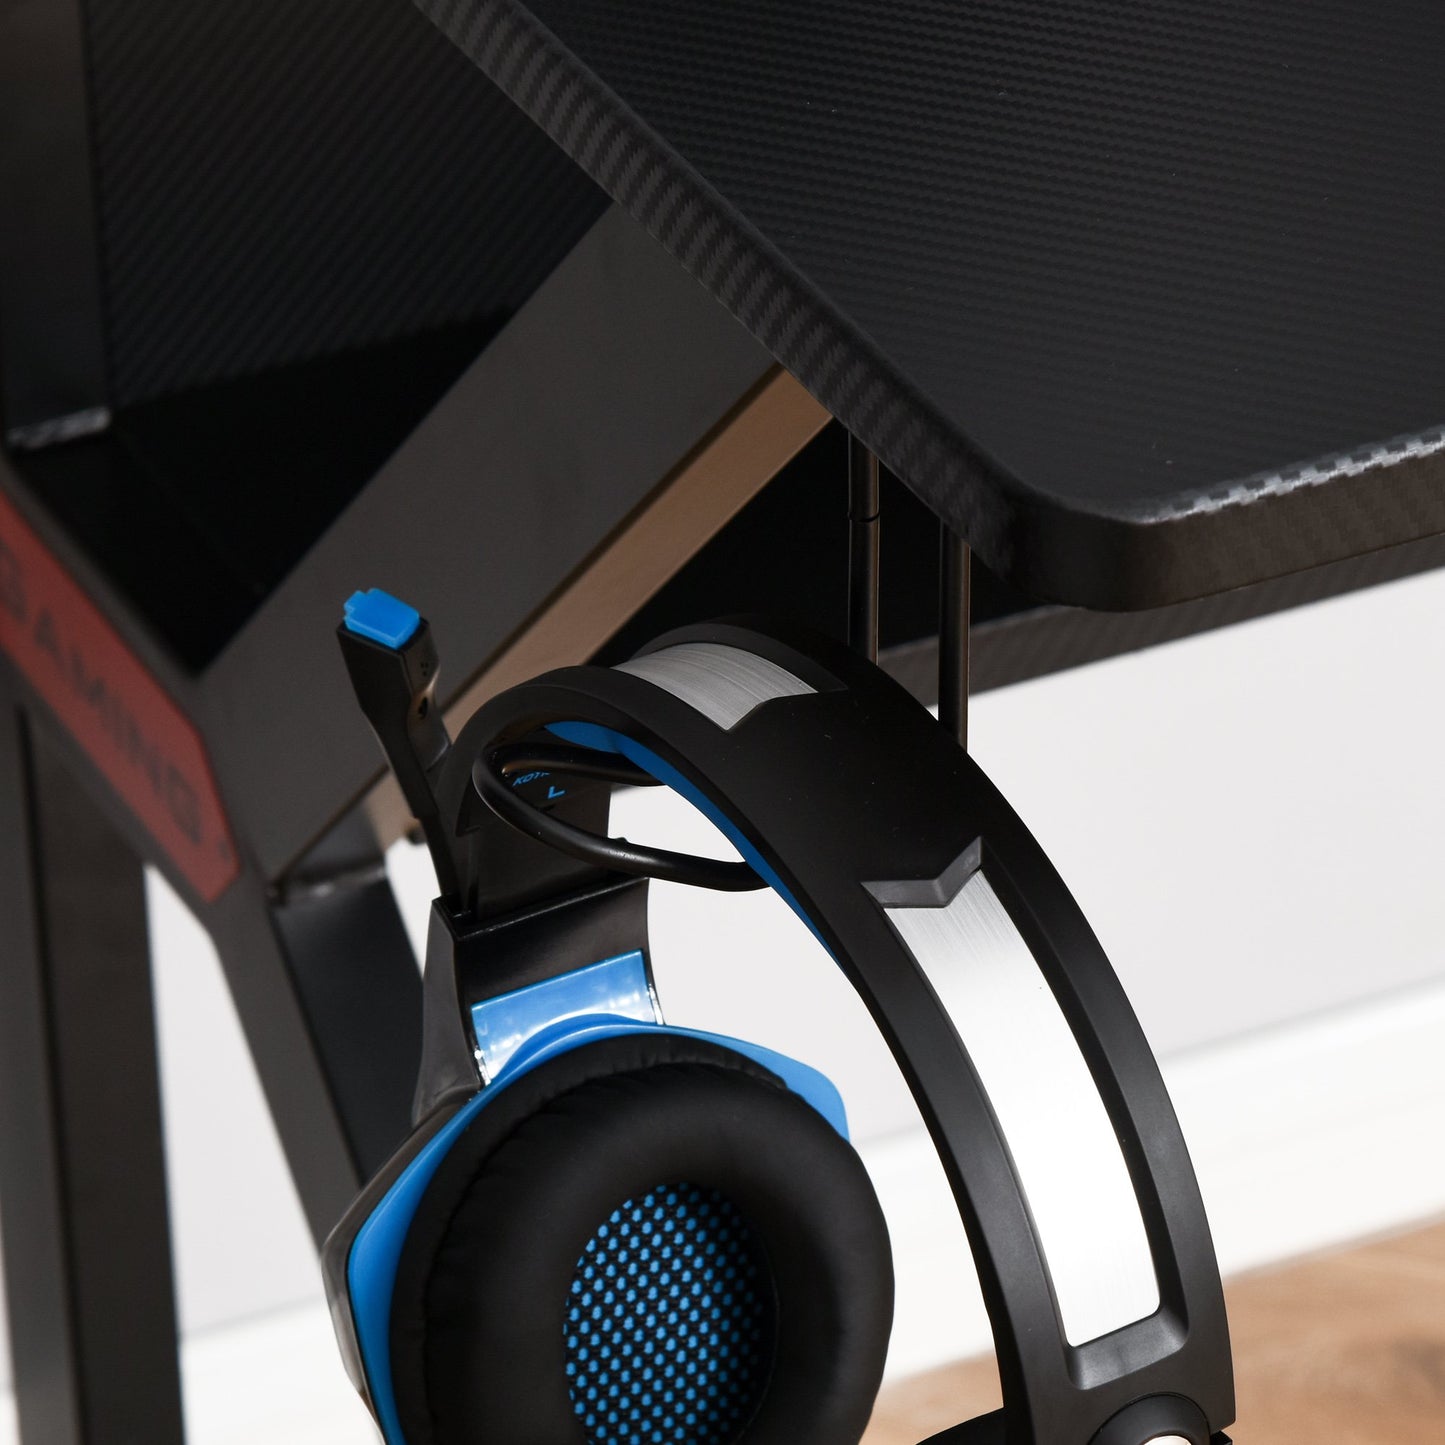 HOMCOM Metal Frame Gaming Computer Desk w/Cup Holder Headphone Hook & Cable Basket Black